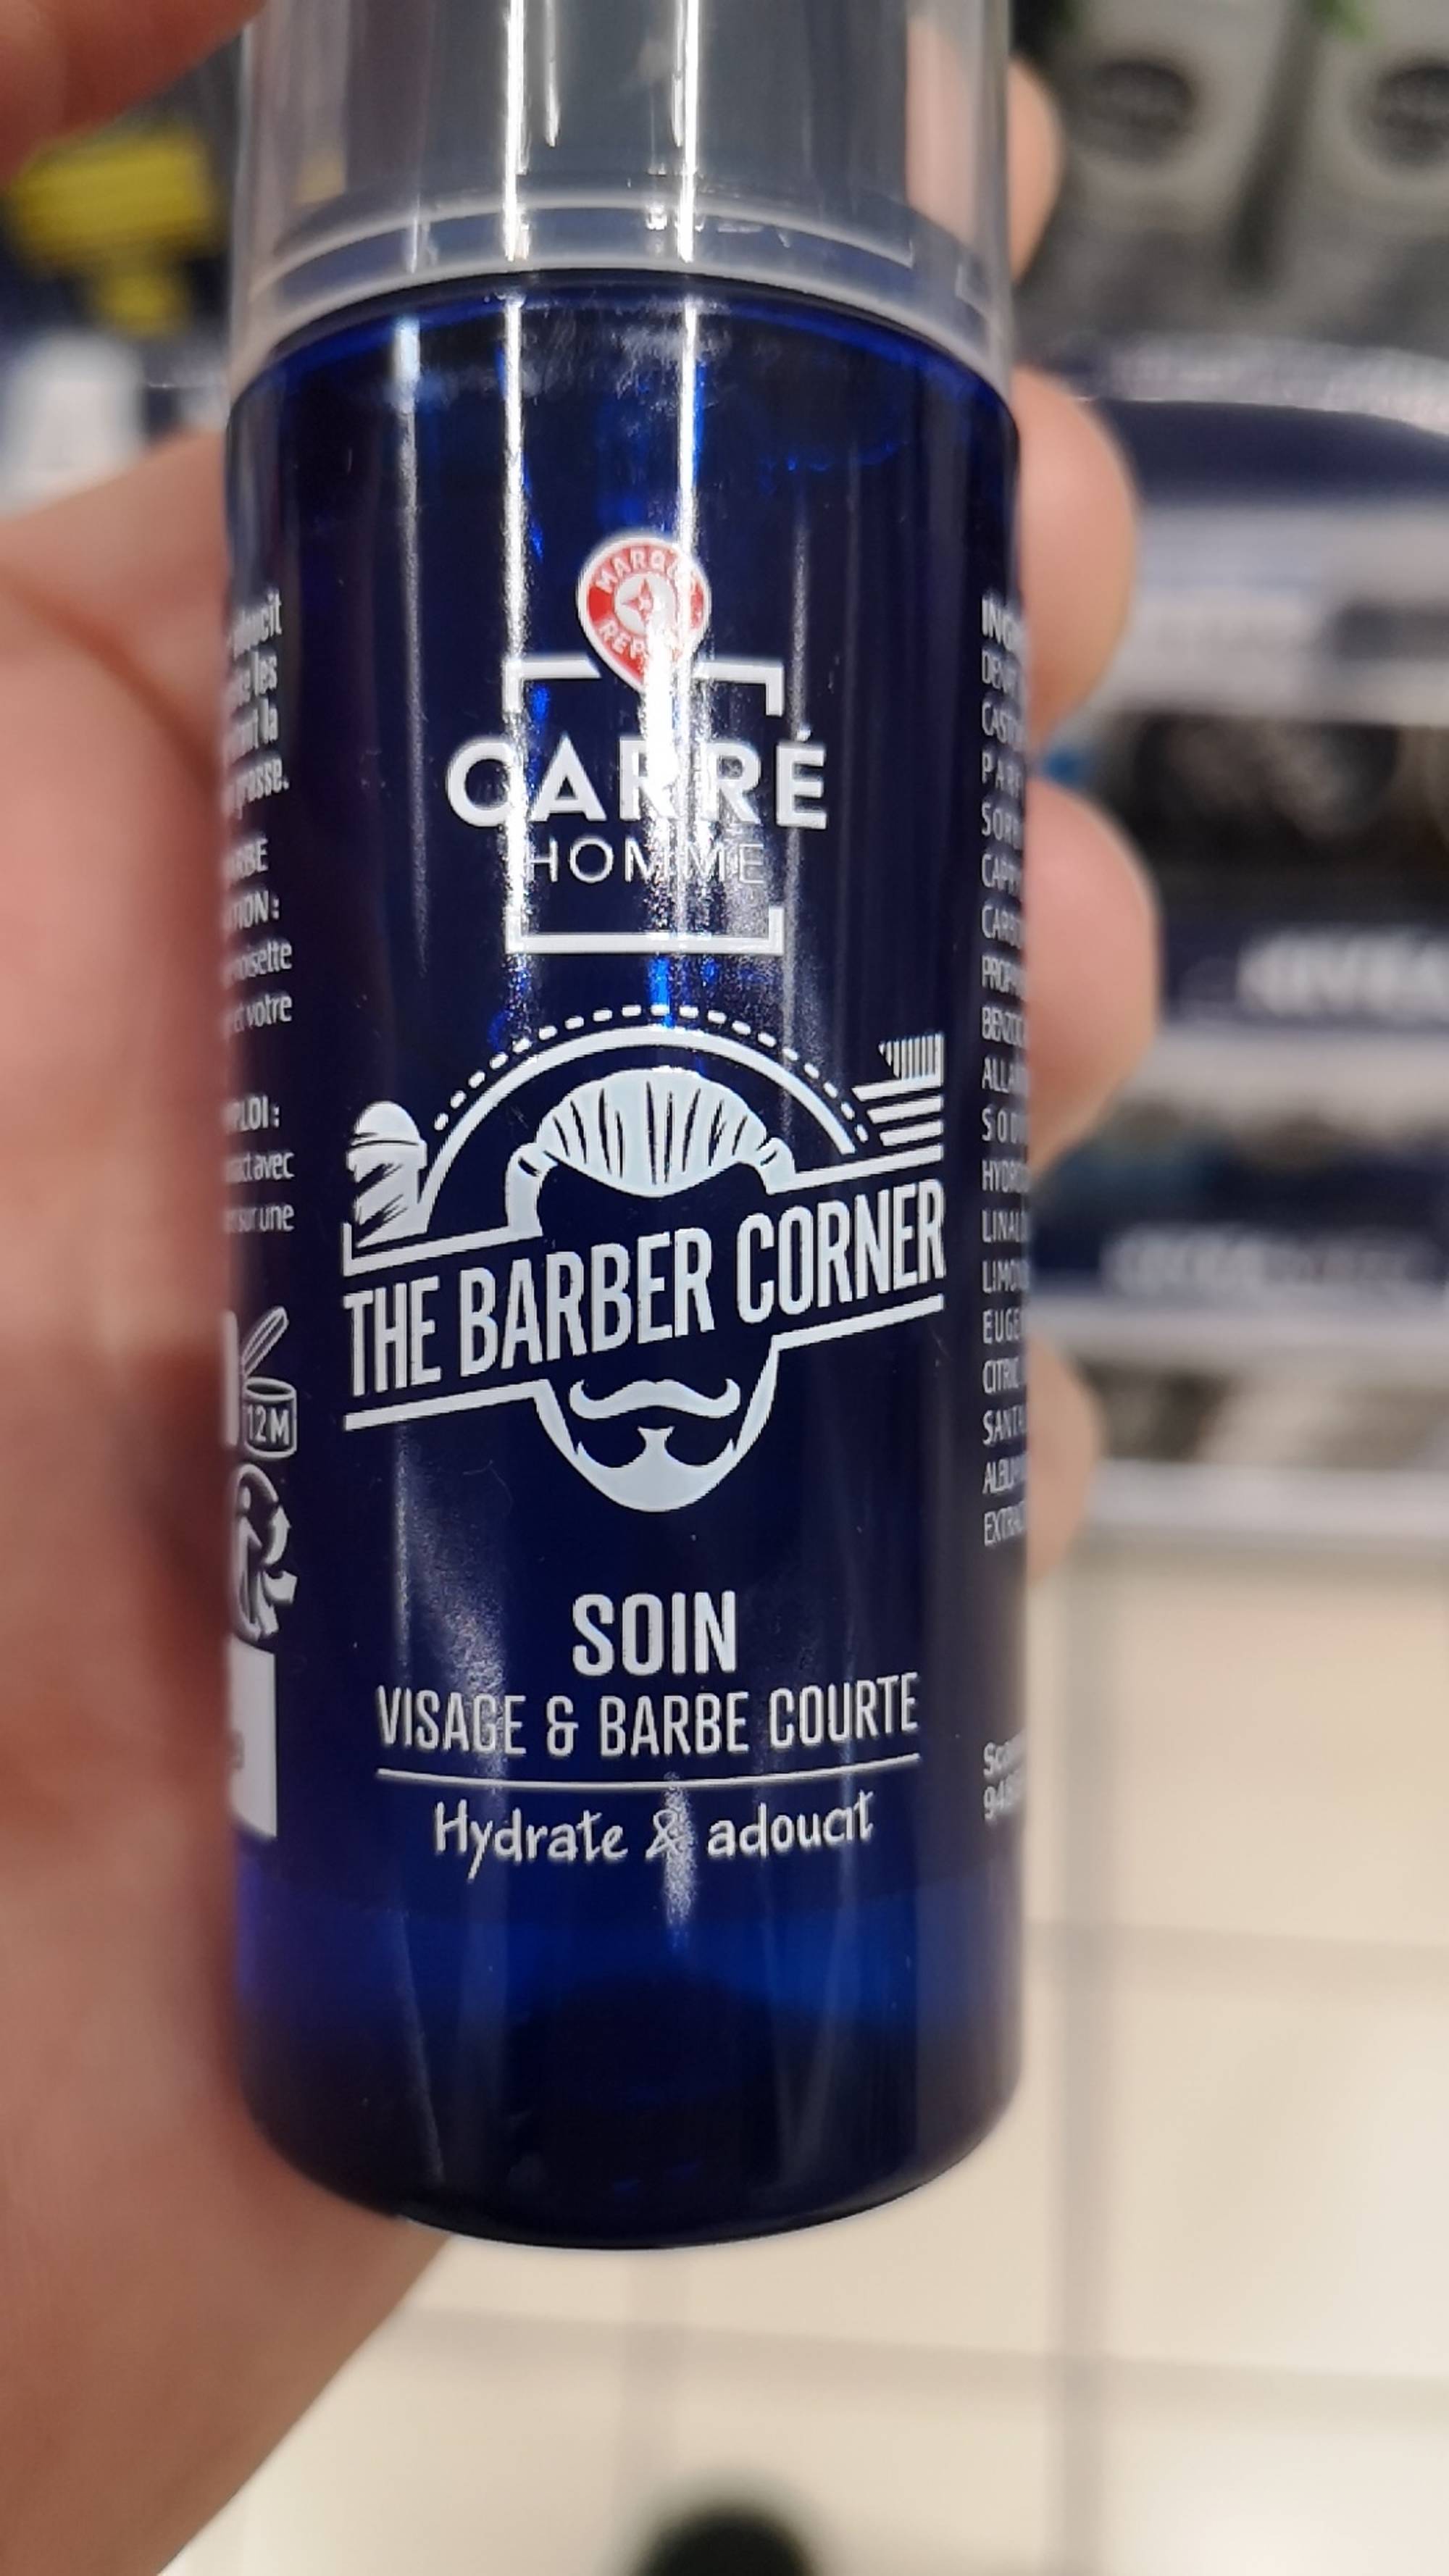 MARQUE REPÈRE - Carré Homme - The barber corner